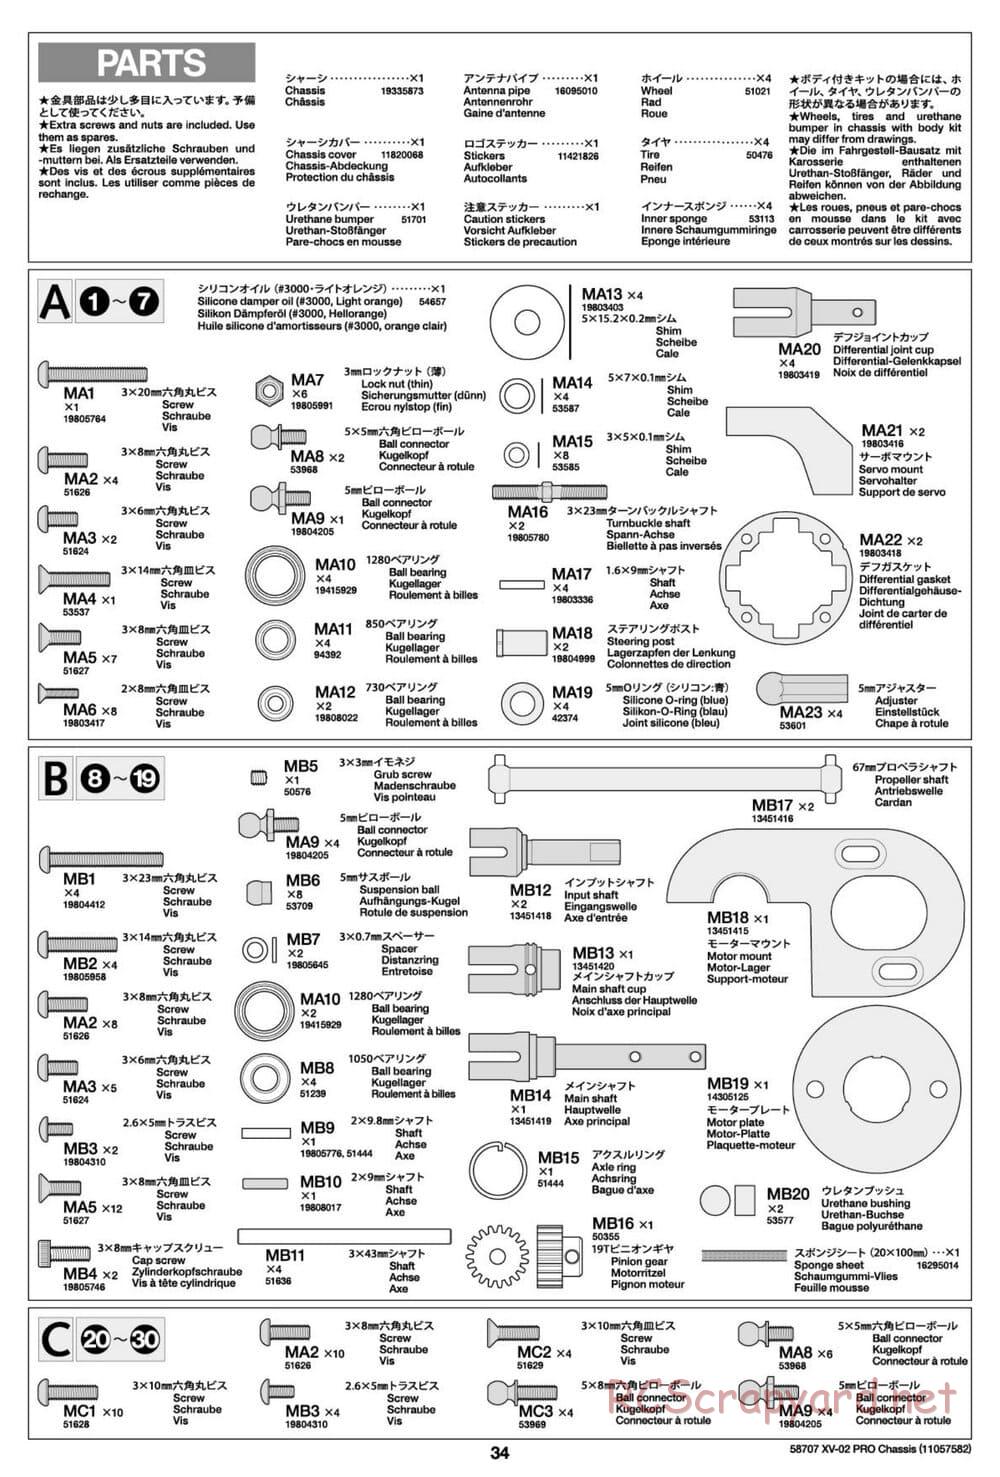 Tamiya - XV-02 Pro Chassis - Manual - Page 34